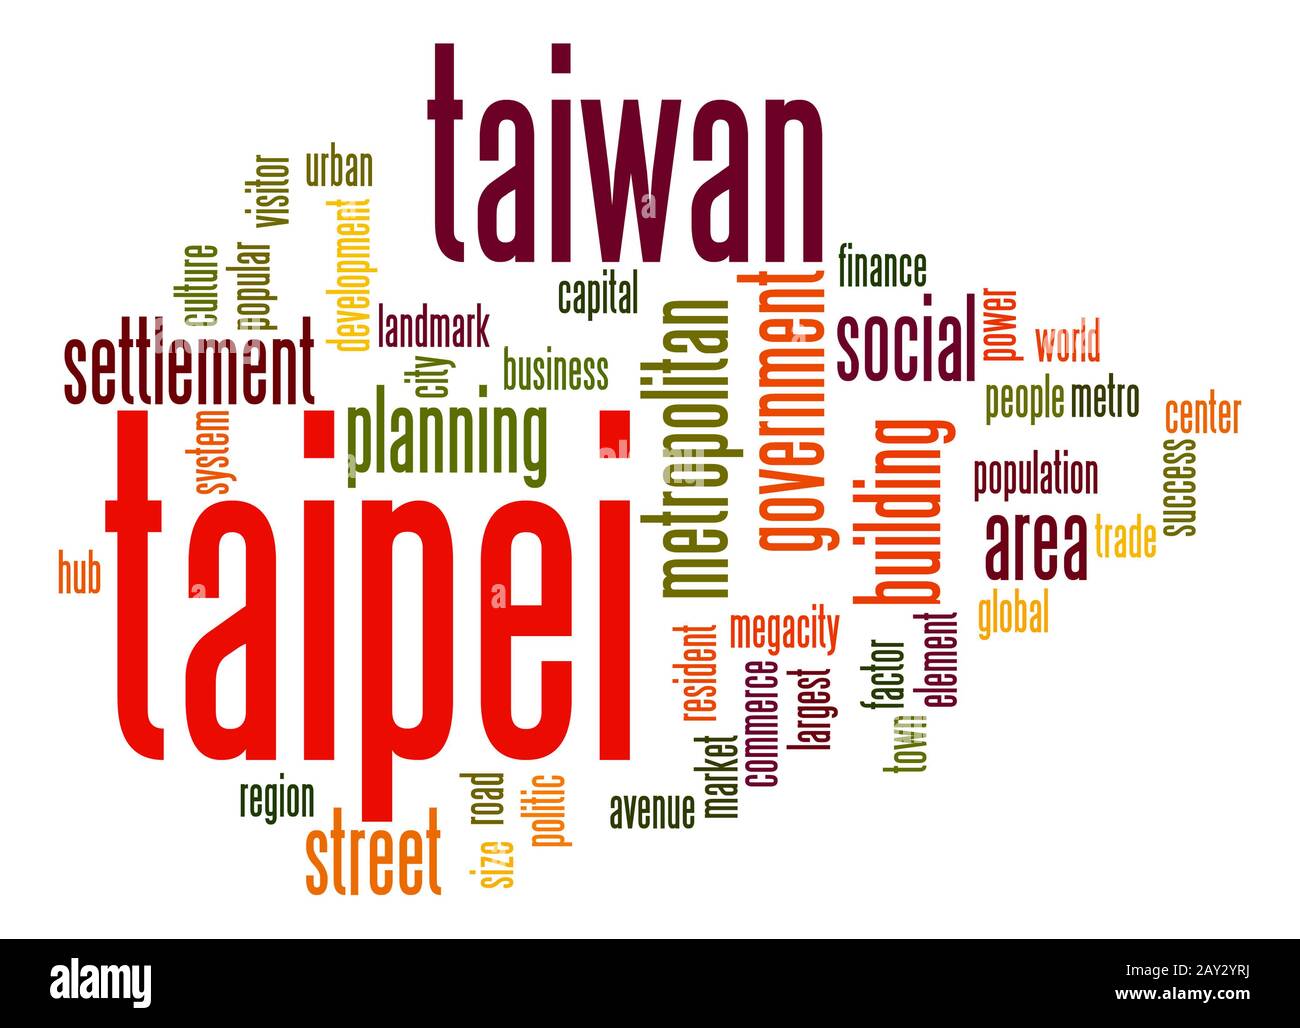 Taipei  word cloud Stock Photo